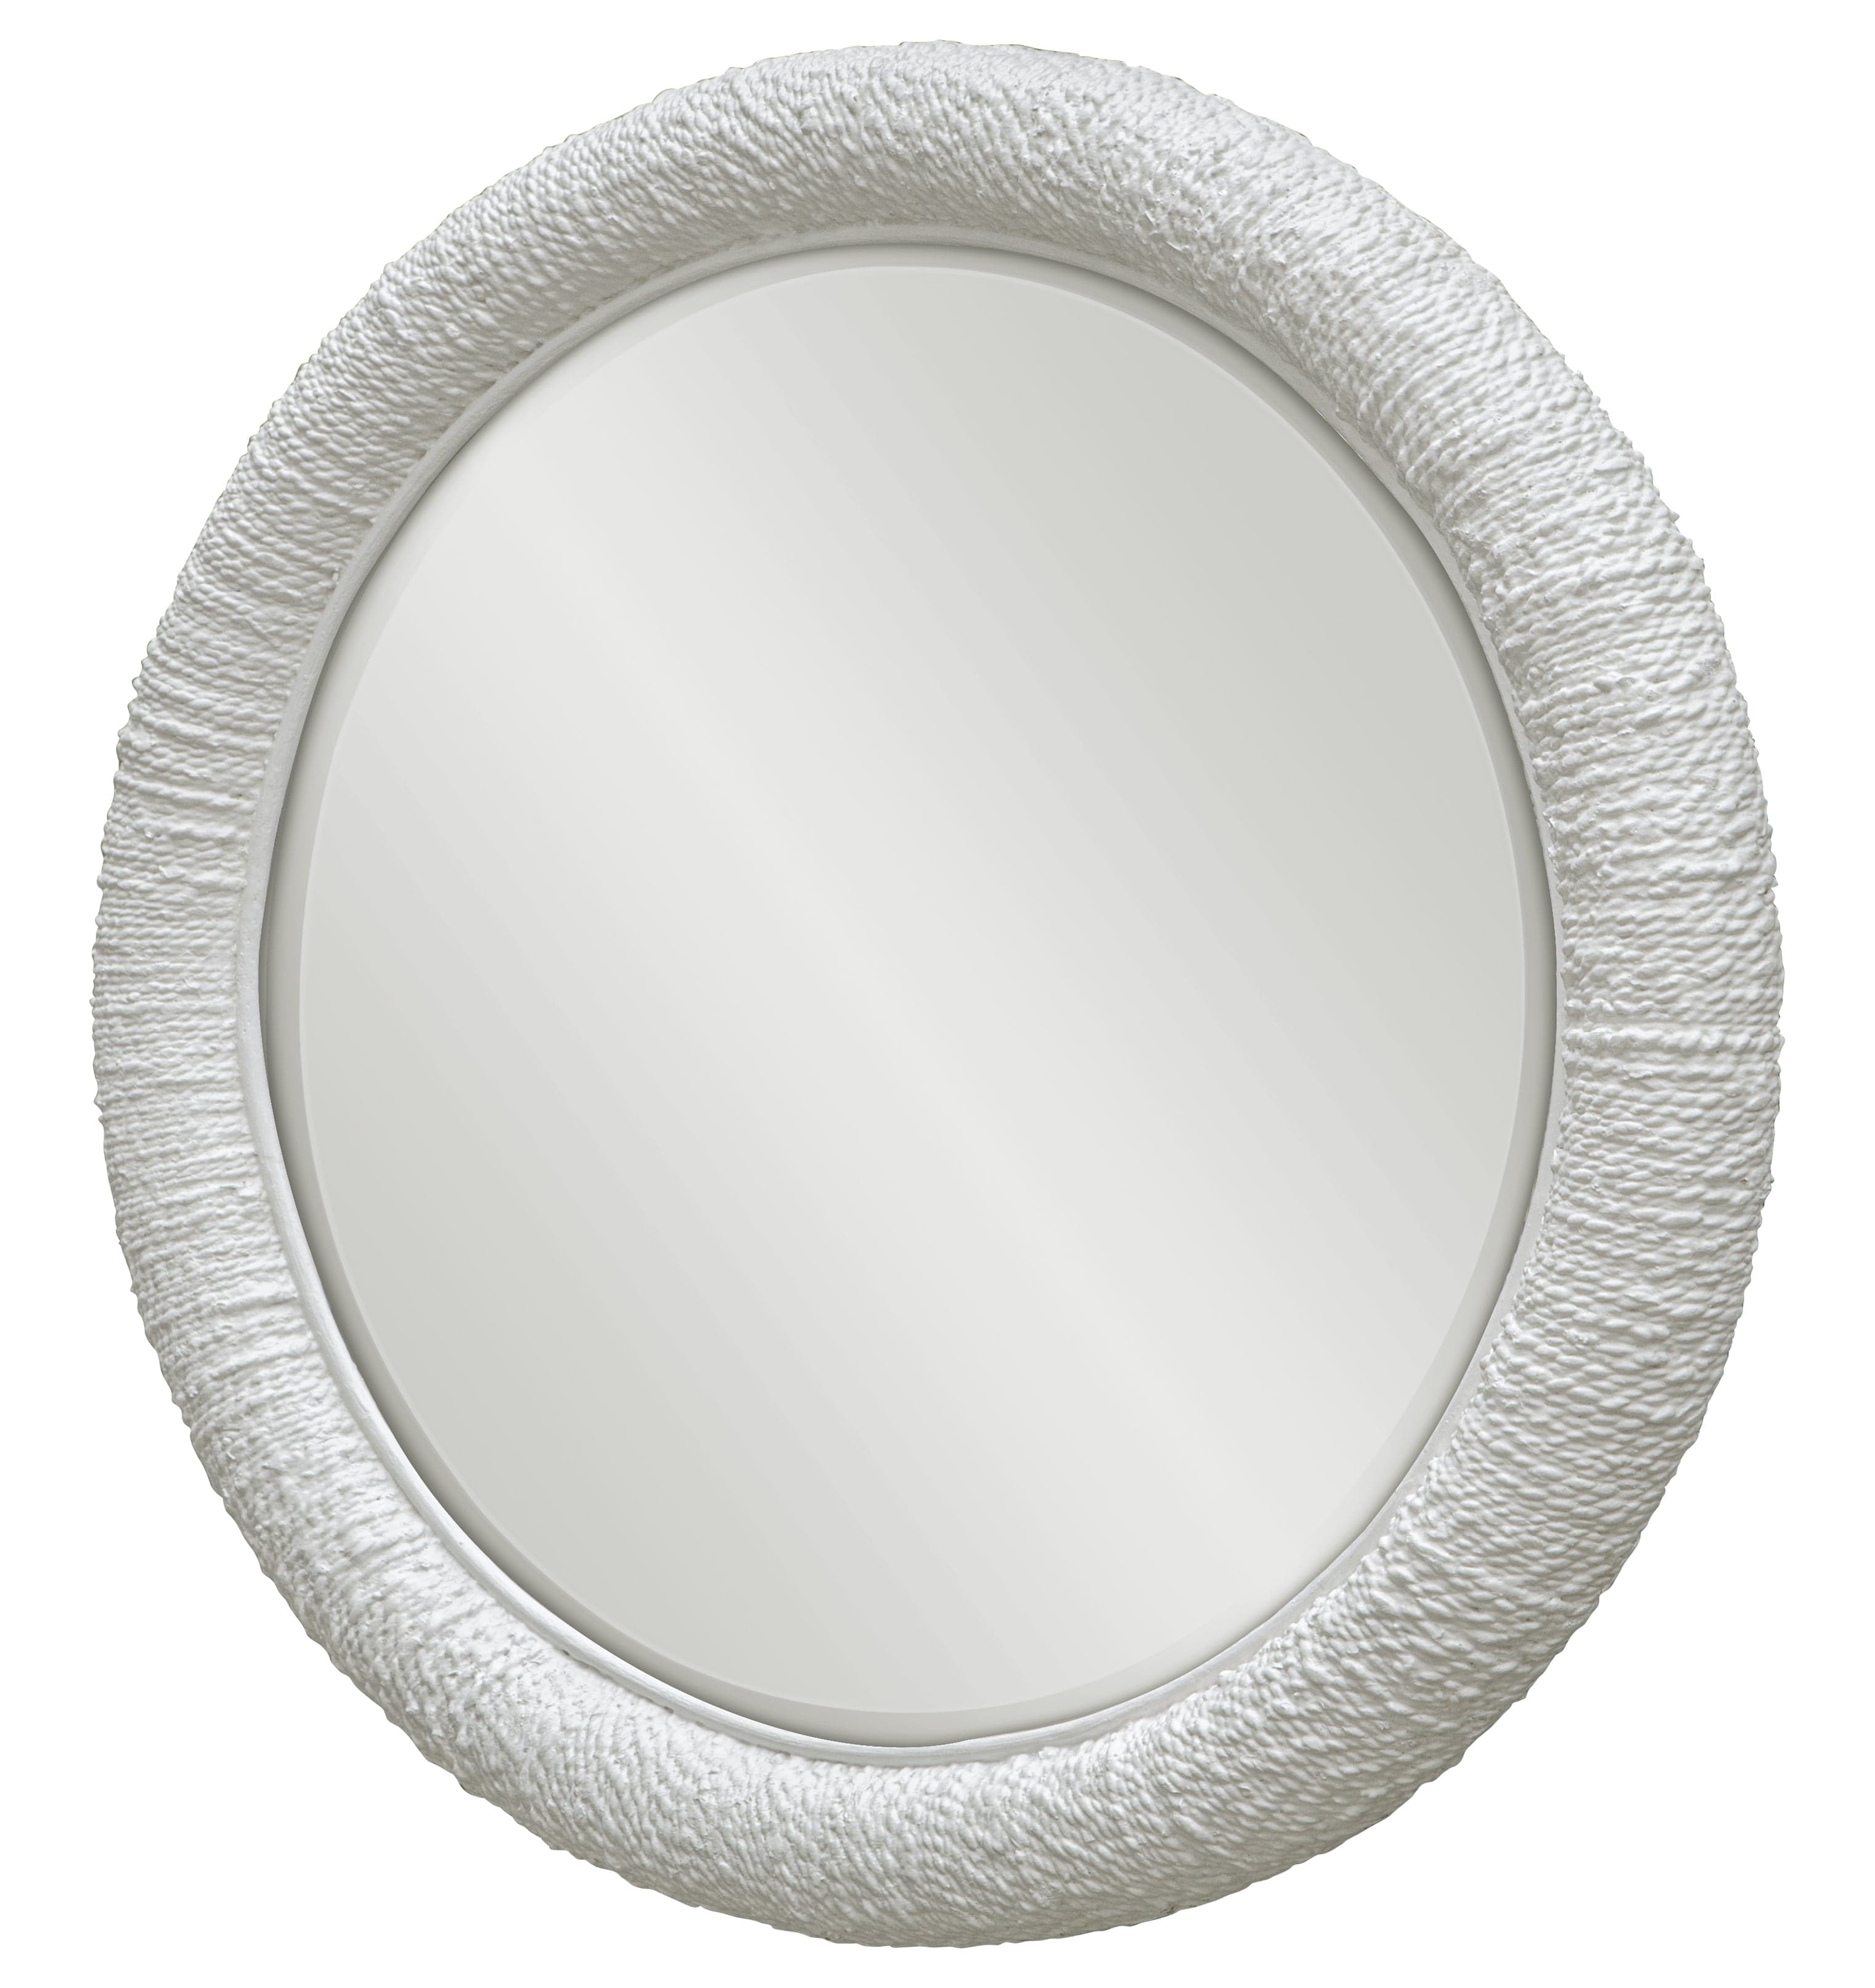 Mariner White Round Mirror Uttermost